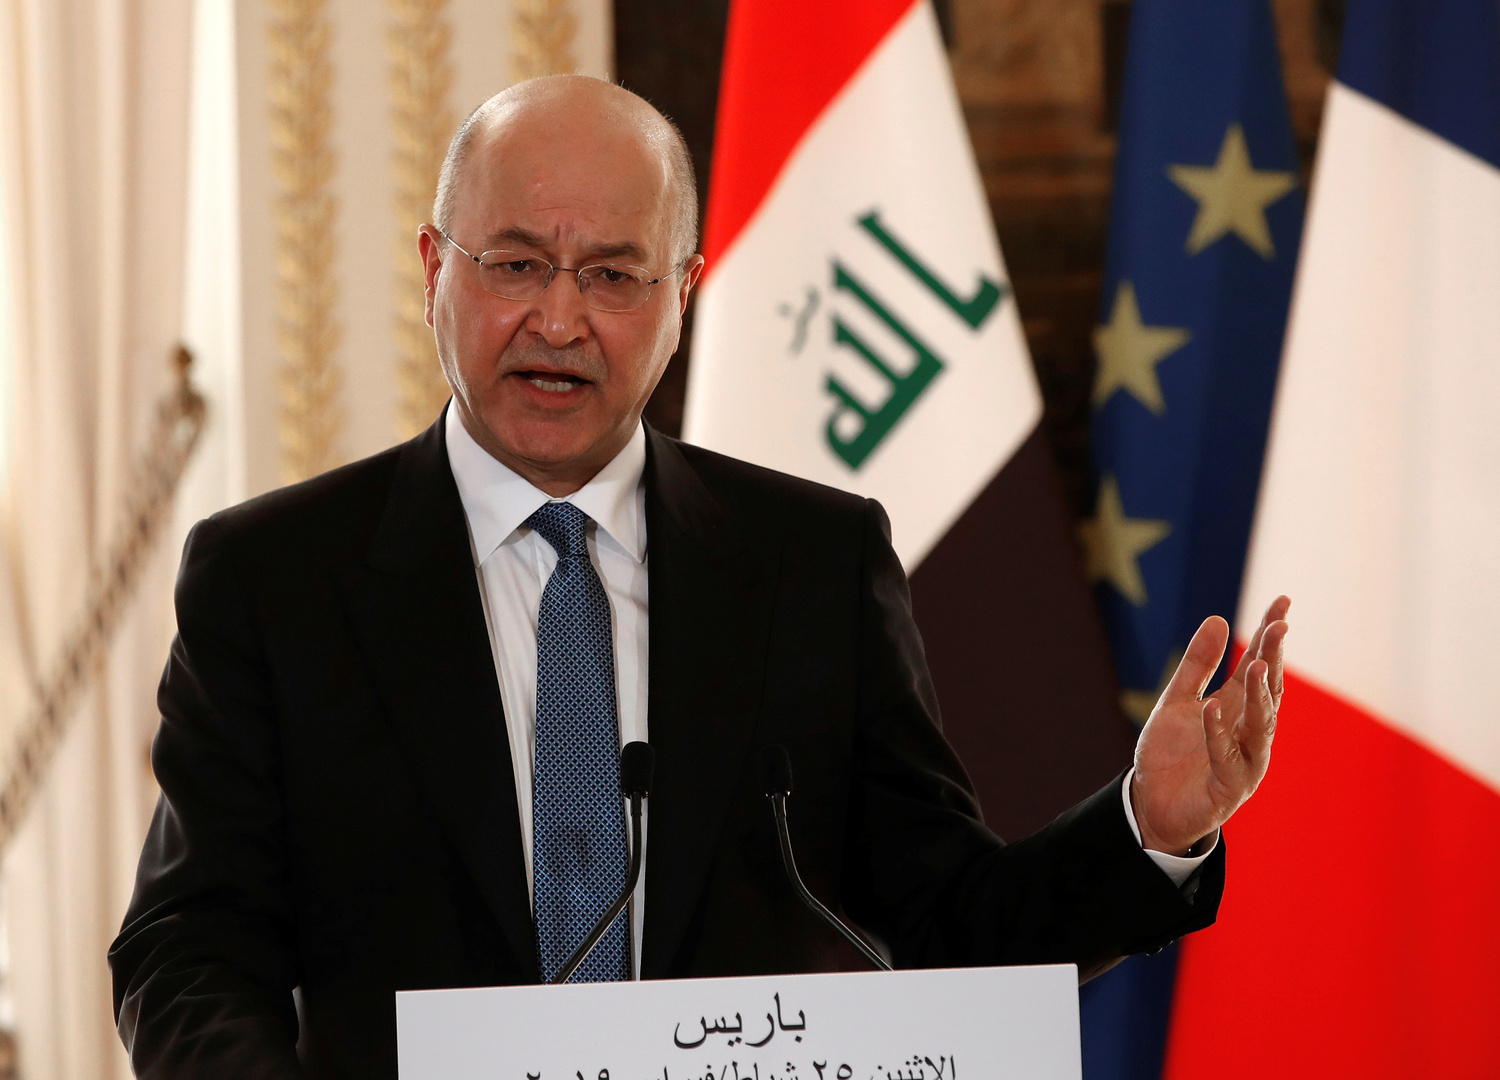 الرئيس العراقي يصادق على الموازنة المالية لسنة 2021